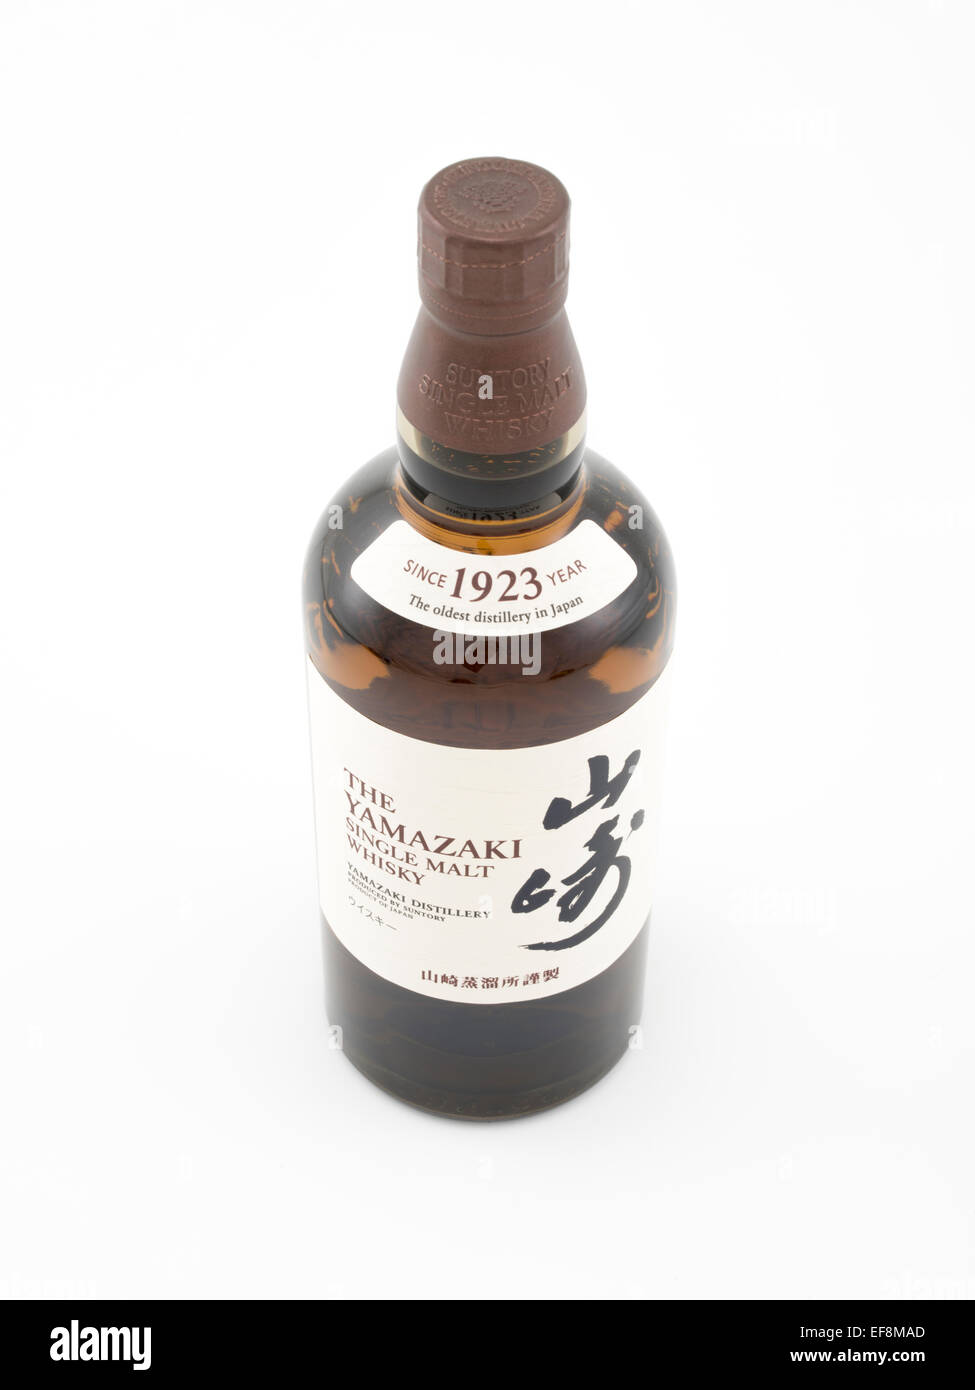 L'del whisky single malt Yamazaki prodotta da Suntory, prodotto del Giappone. Whisky giapponese Foto Stock